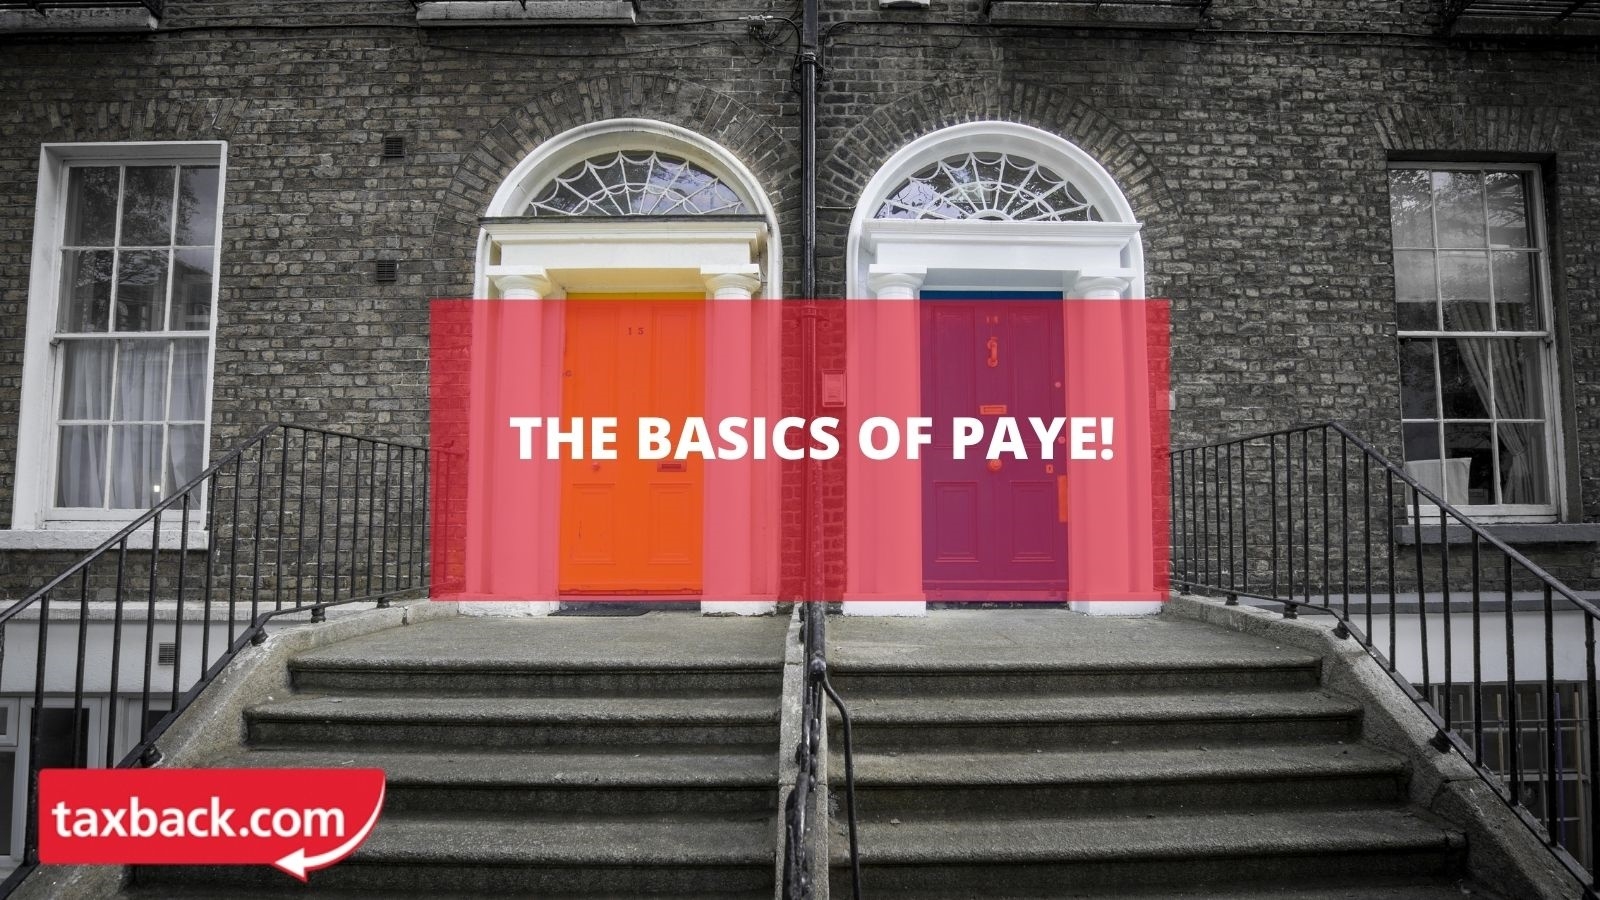 The Basics of PAYE!